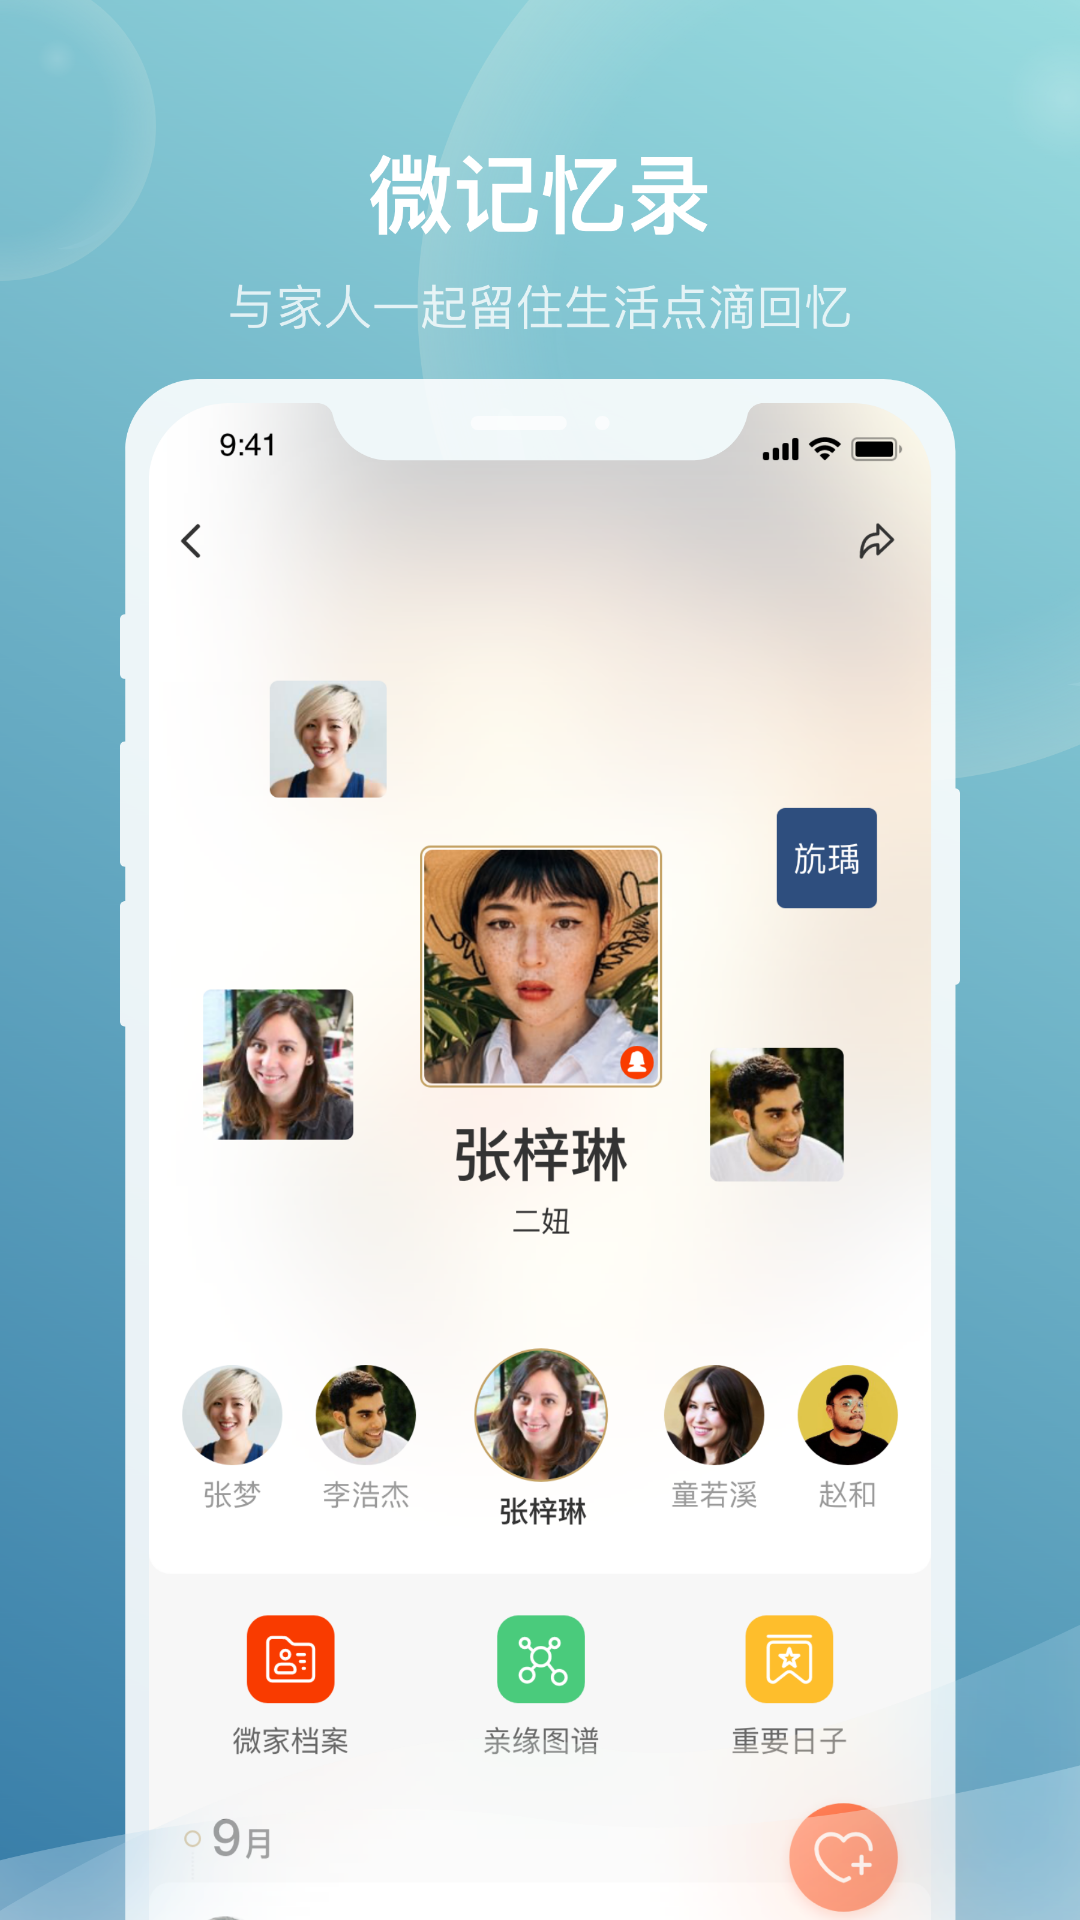 安卓微家欢聚家庭社交app官方版 v1.0软件下载